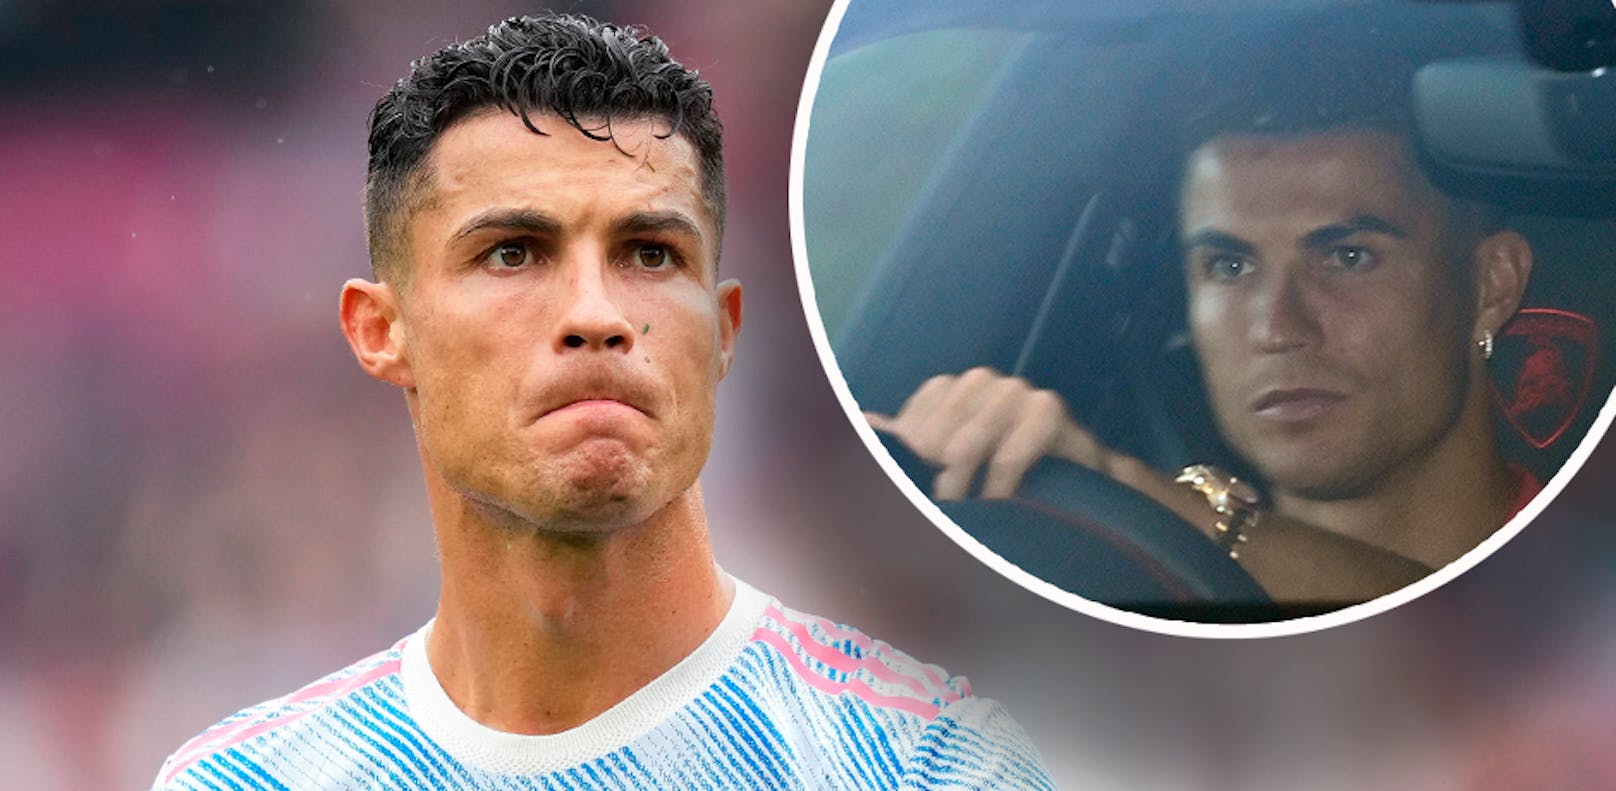 Ronaldo bekommt kein Benzin für seinen Luxus-Bentley